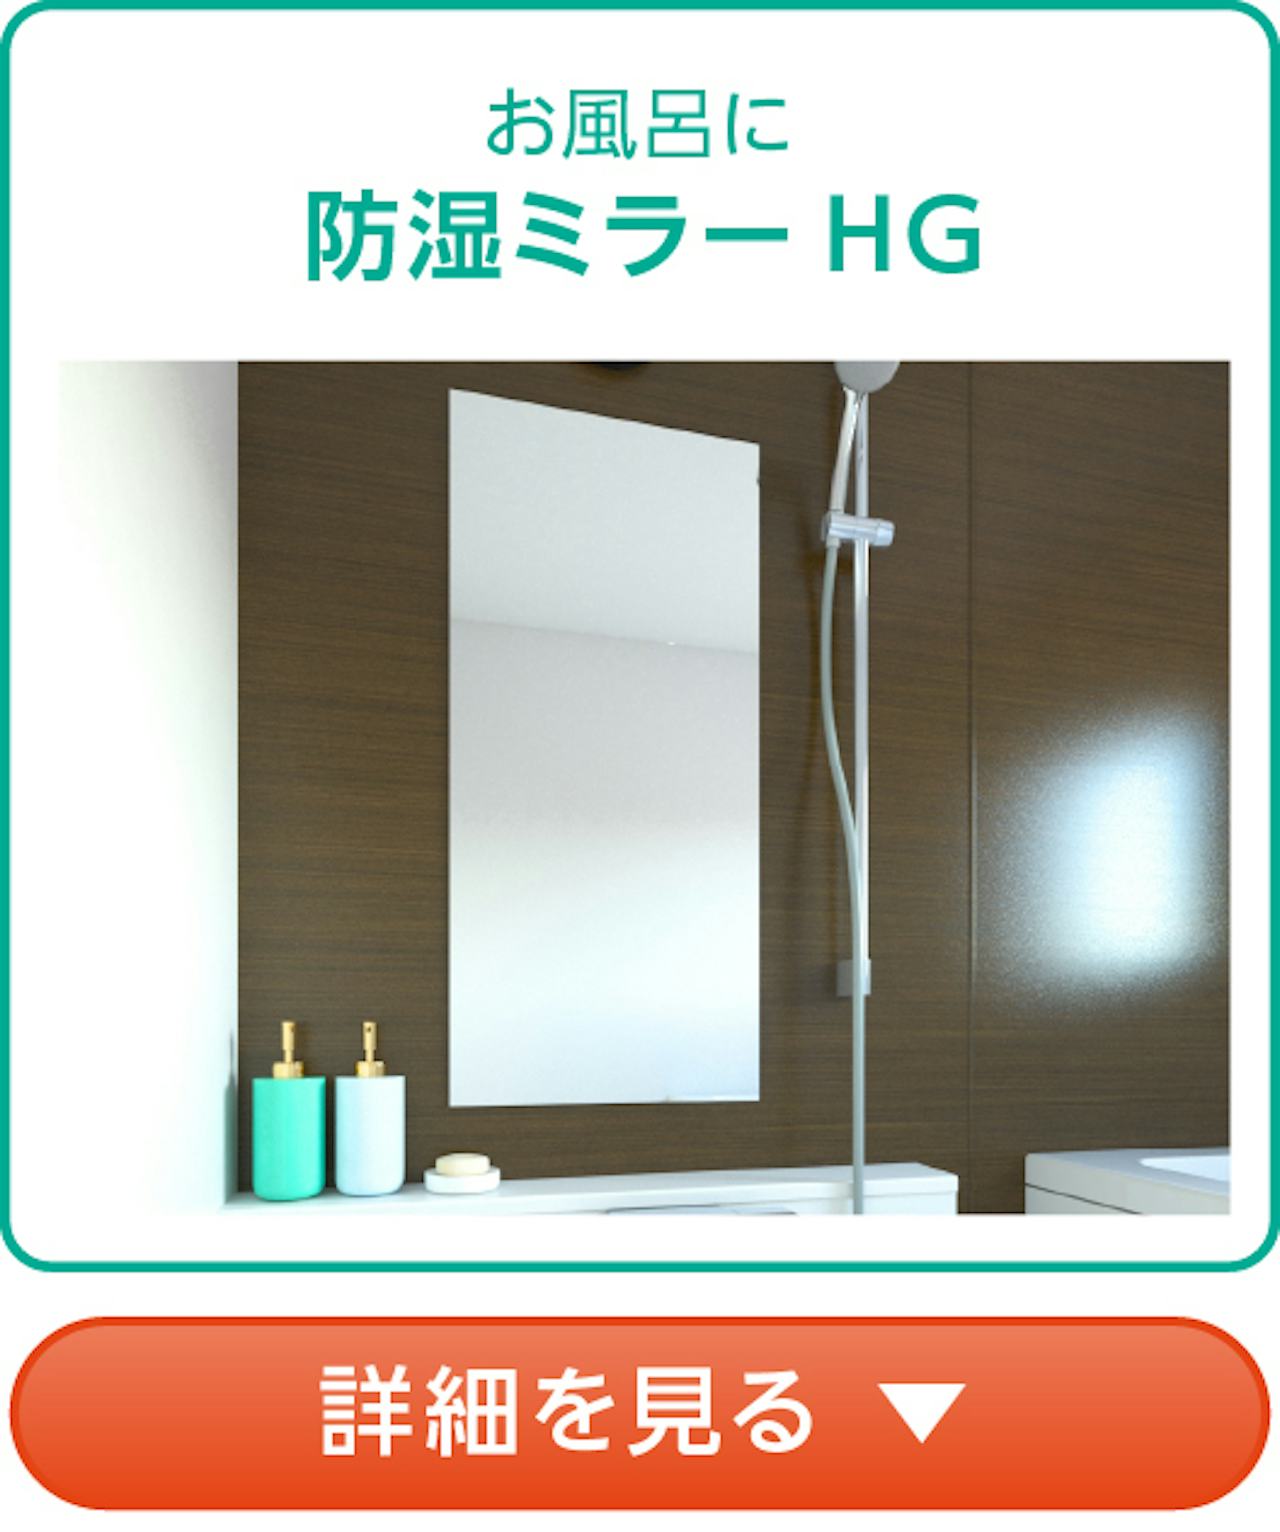 頑固なウロコ(水垢)があるお風呂の鏡は「防湿ミラーHG」に交換するのがおすすめ